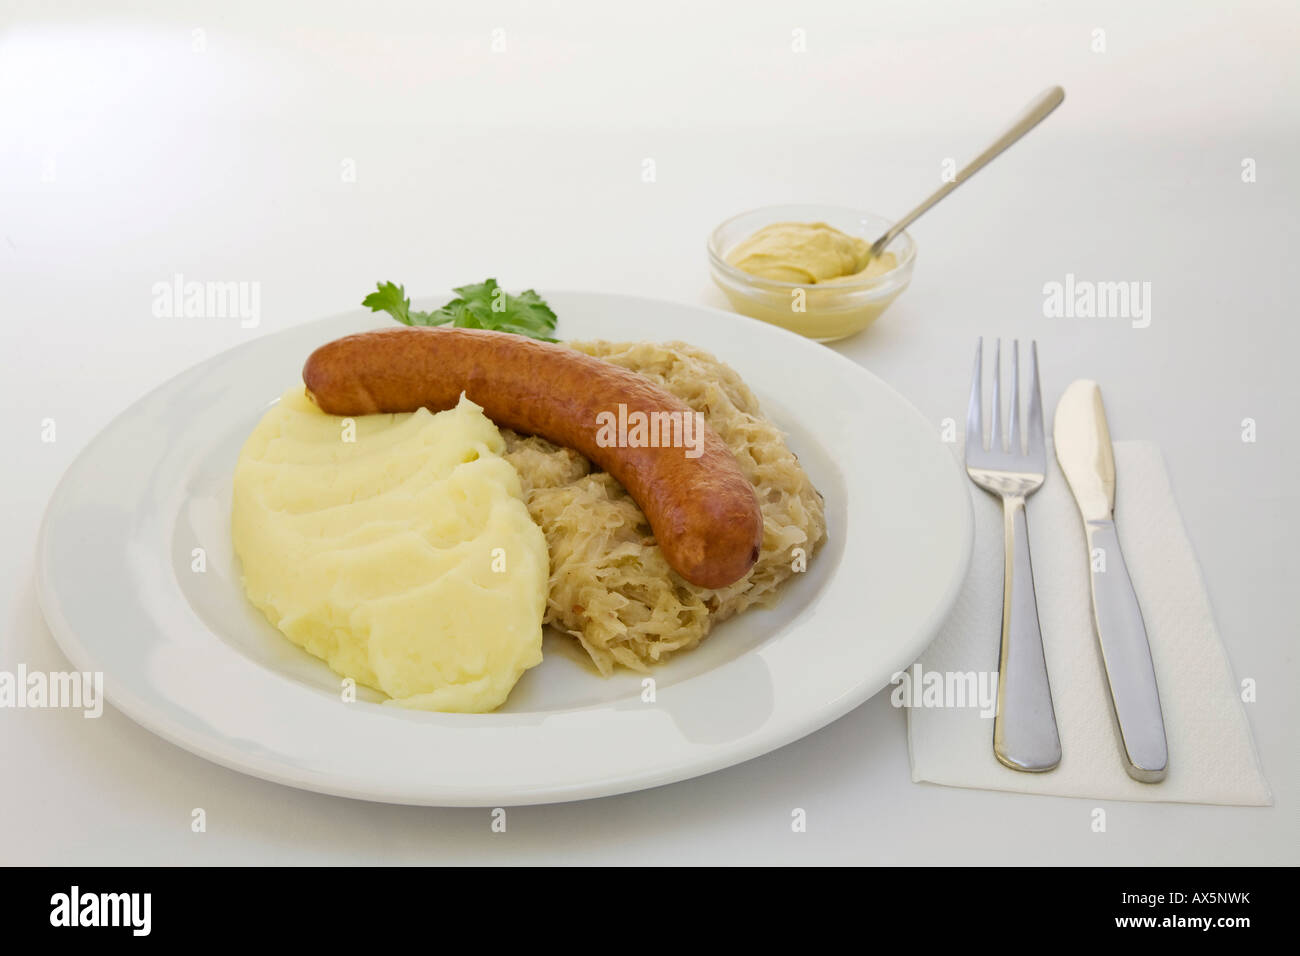 Mettwurst sausage, sauerkraut, mashed potatoes and mustard Stock Photo